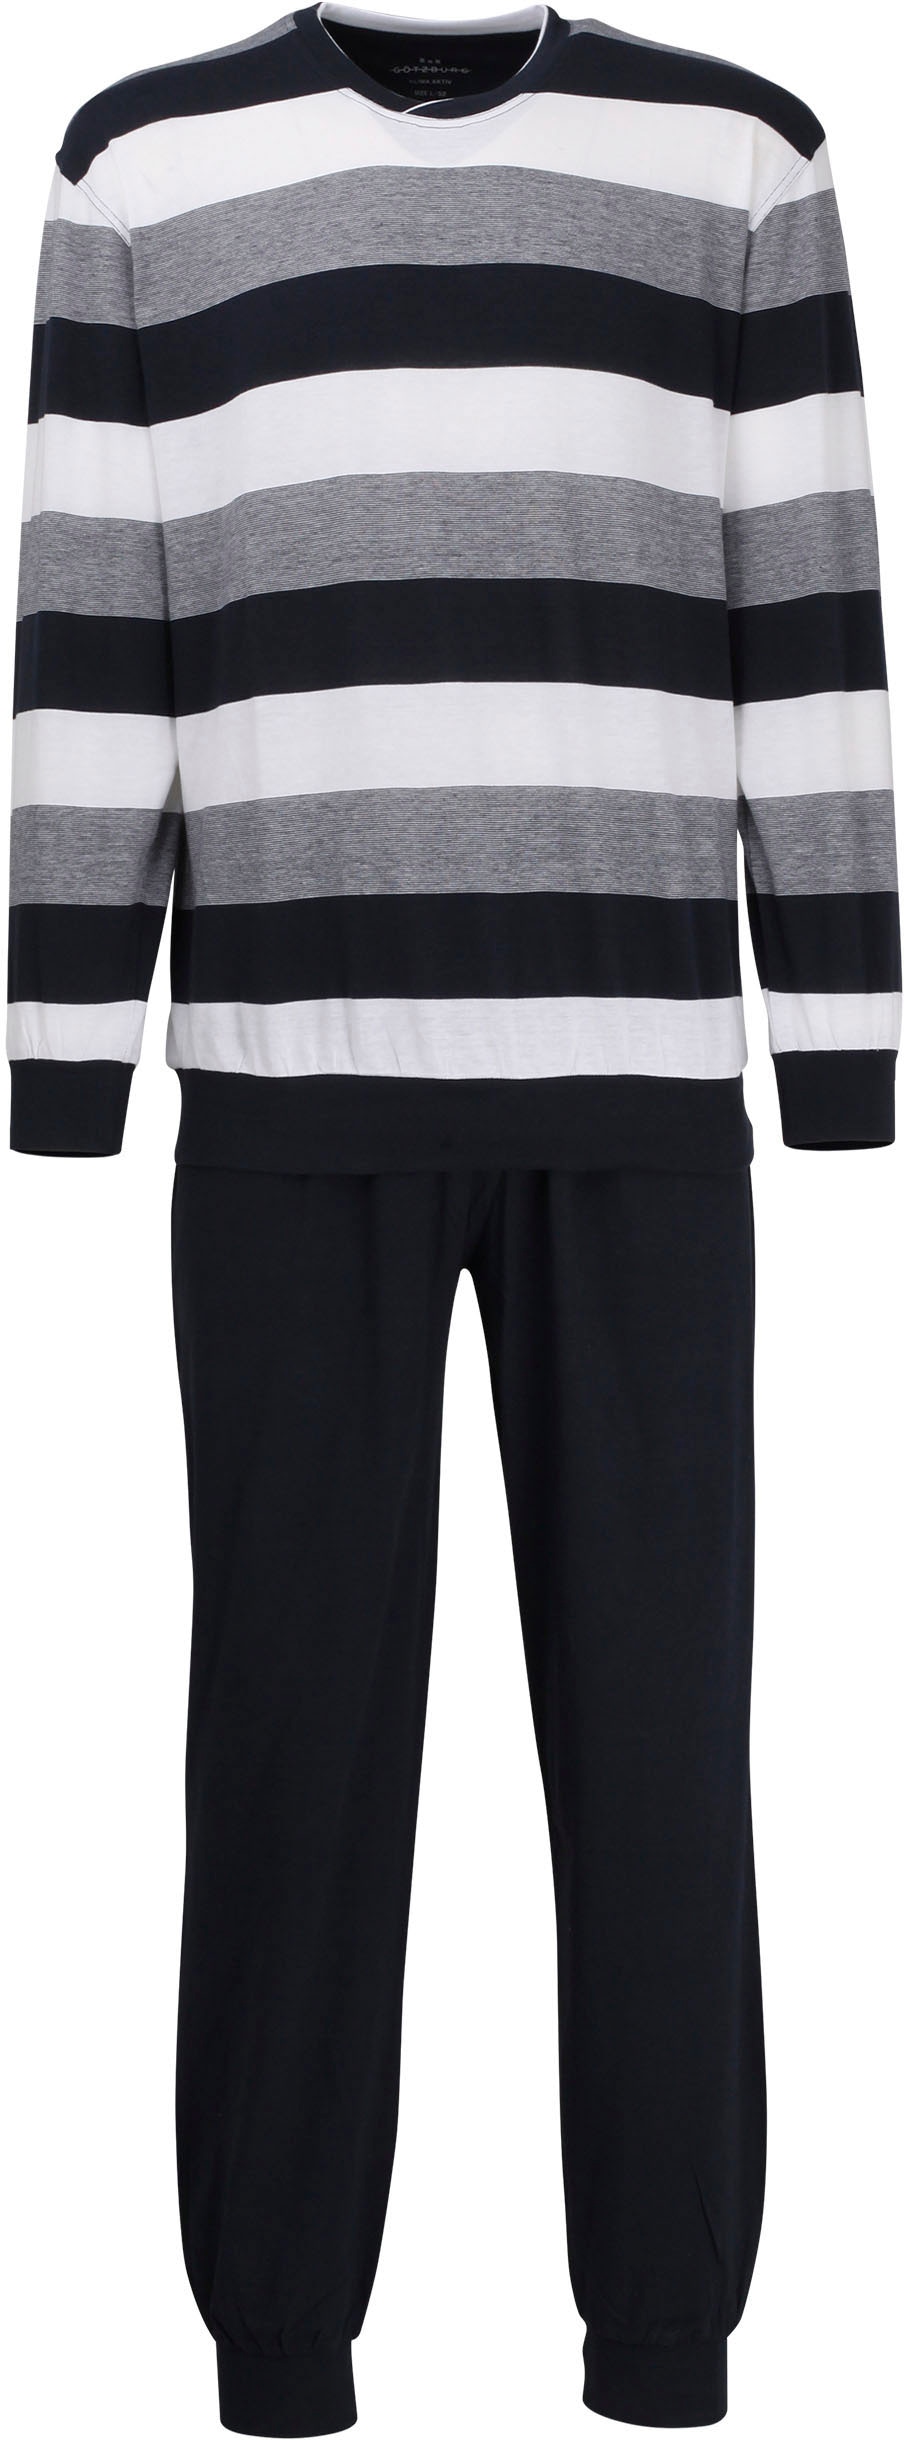 Pyjama »Upper East«, (2 tlg.), mit breitem Streifen-Design